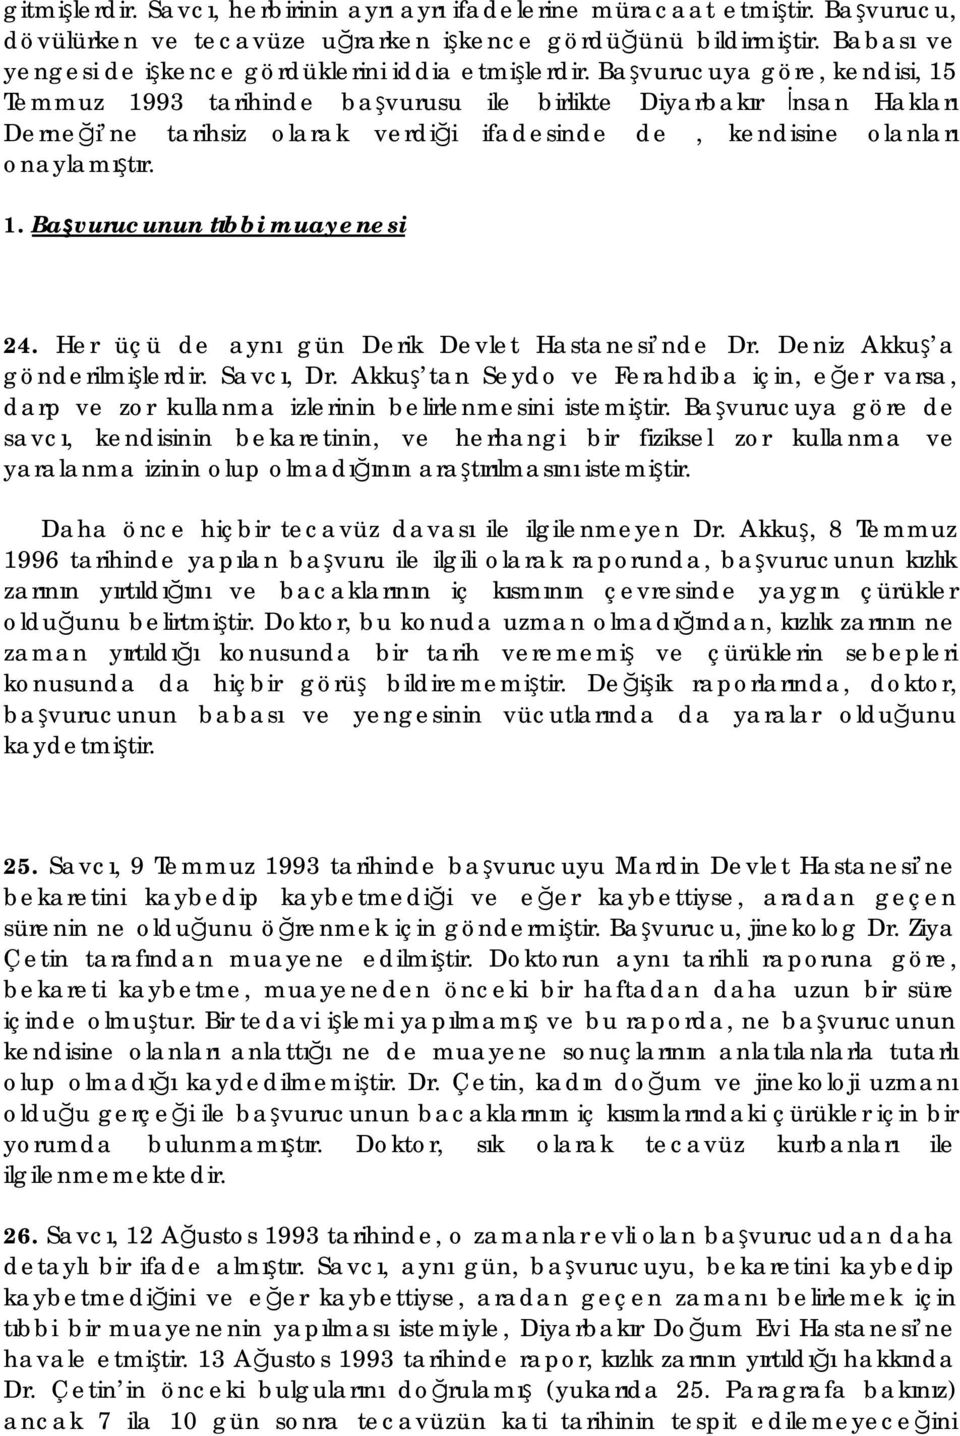 Başvurucuya göre, kendisi, 15 Temmuz 1993 tarihinde başvurusu ile birlikte Diyarbakır İnsan Hakları Derneği ne tarihsiz olarak verdiği ifadesinde de, kendisine olanları onaylamıştır. 1. Başvurucunun tıbbi muayenesi 24.